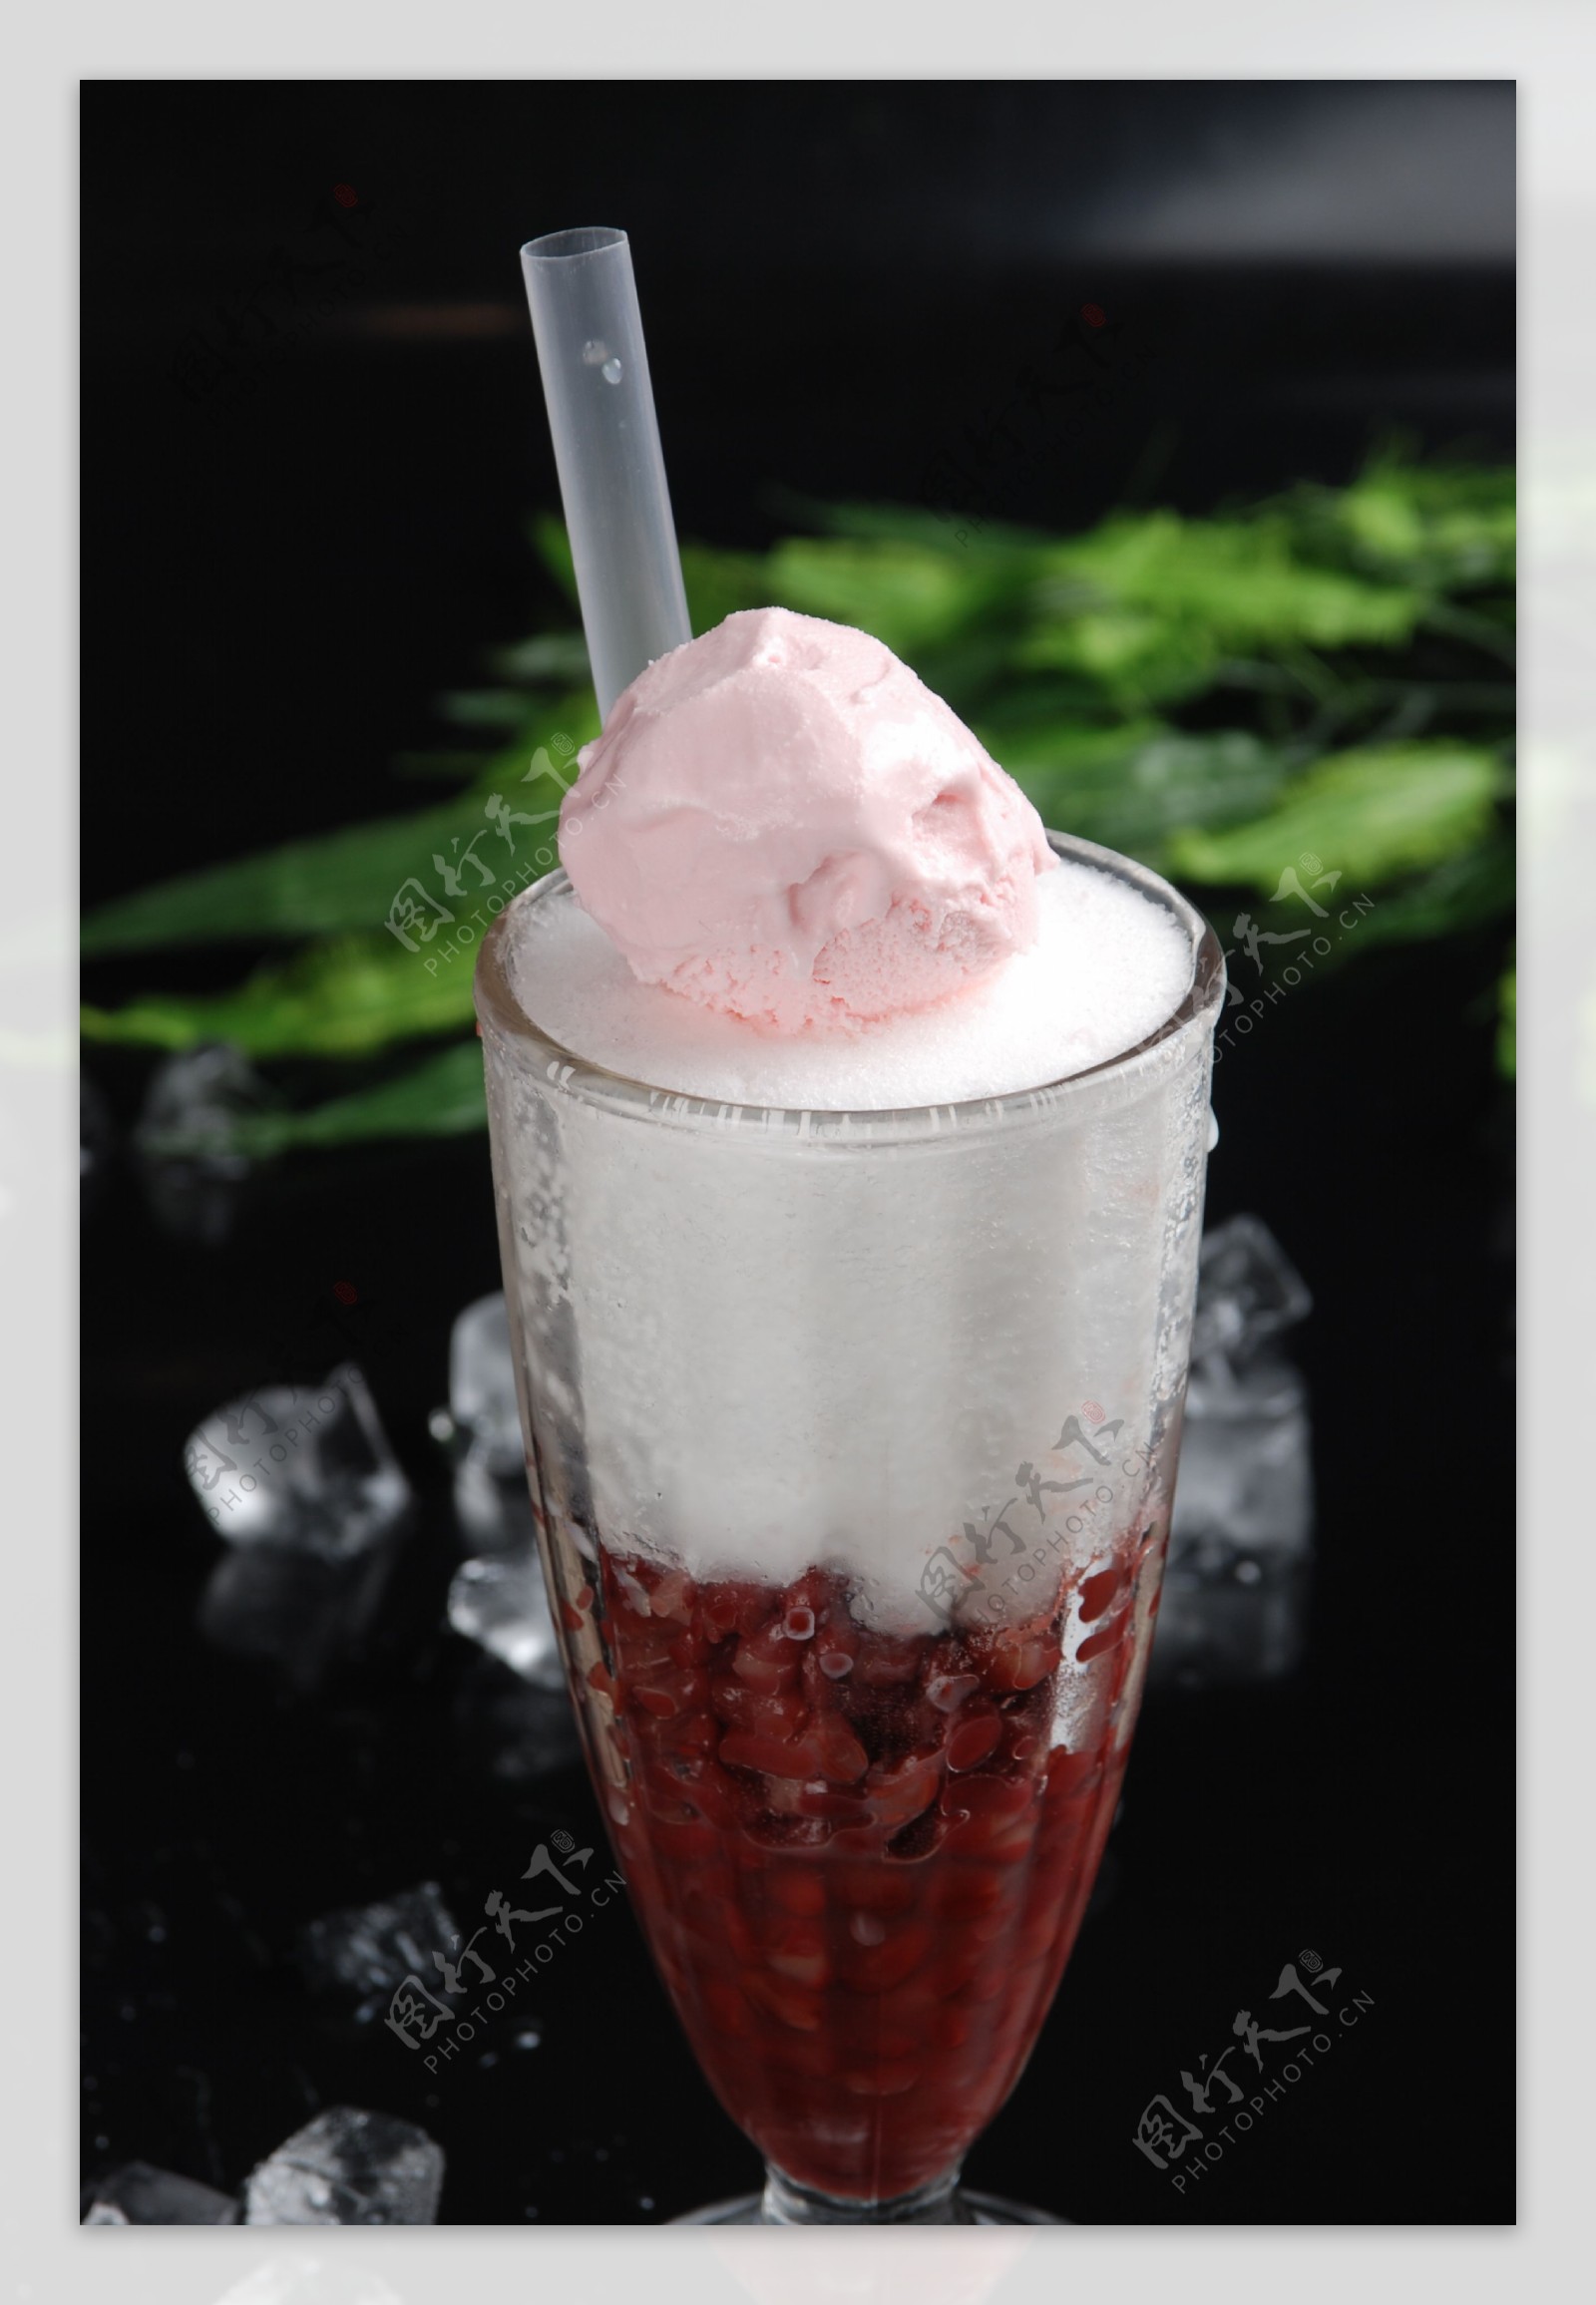 刨冰甜品红豆冰图片